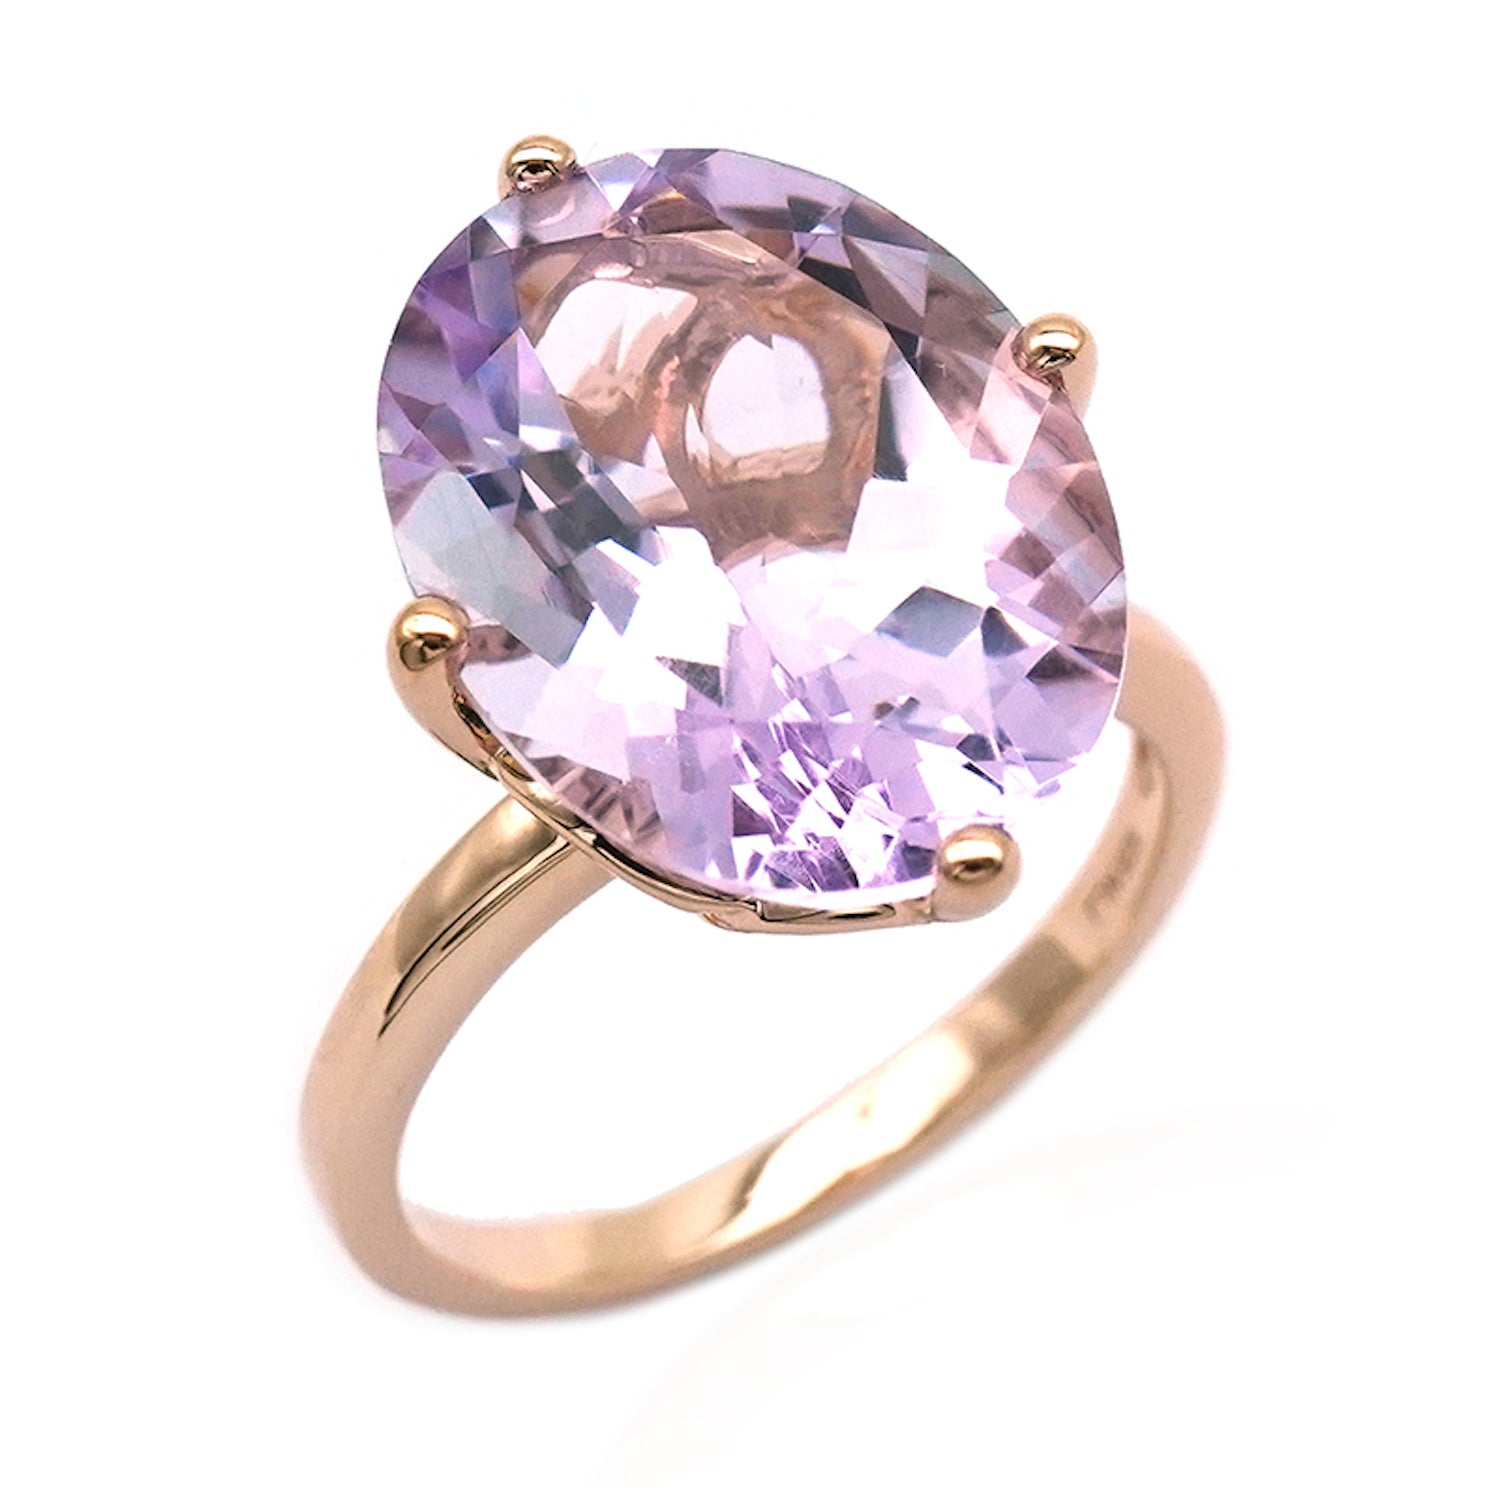 Oval cut pink amethyst gemstone ring.